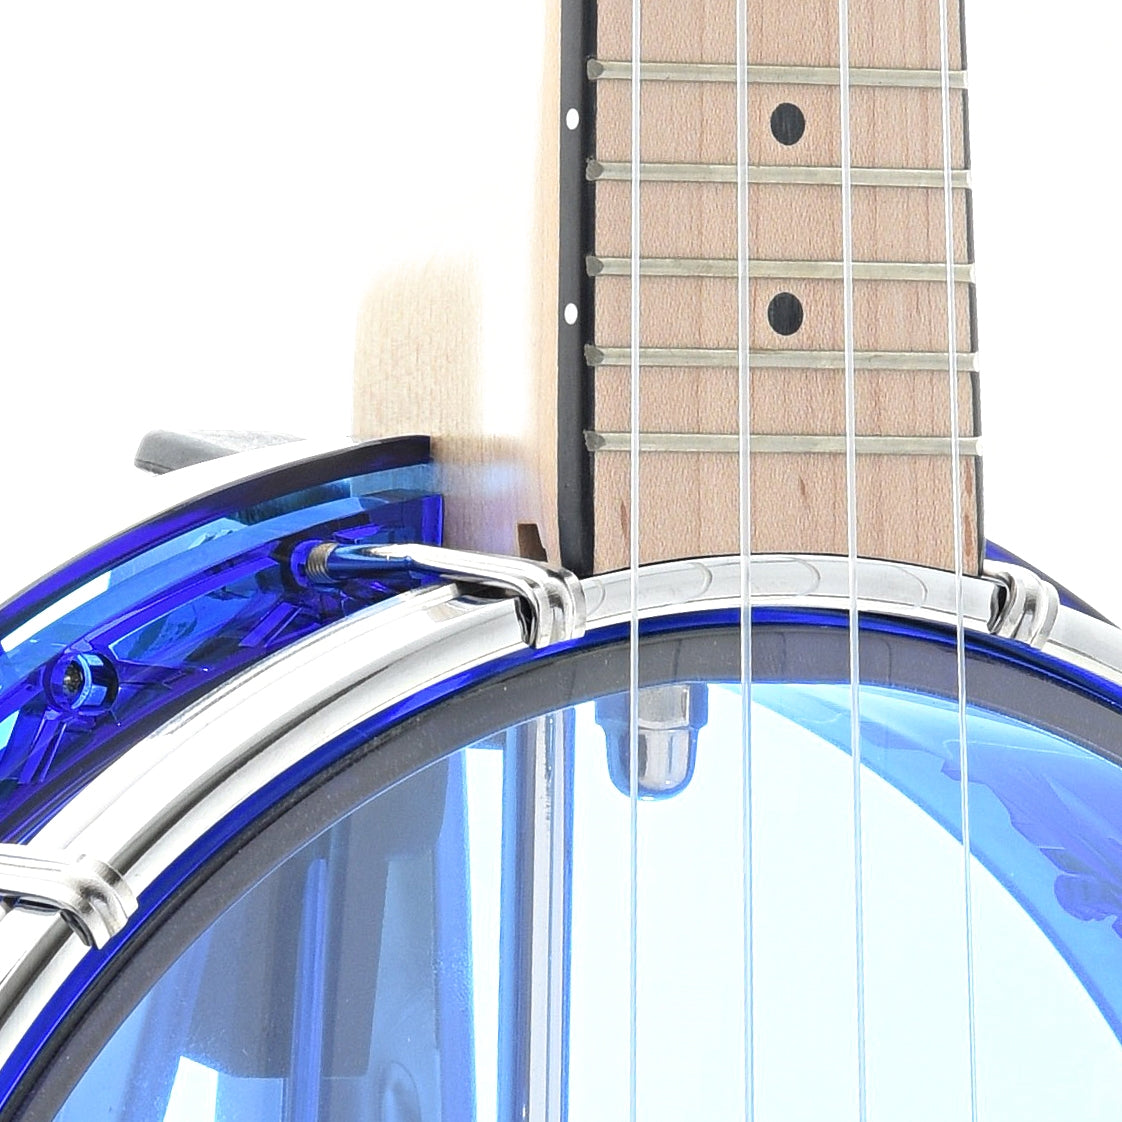 Image 4 of Gold Tone Little Gem Banjo Ukulele & Gigbag, Sapphire (blue) - SKU# LGEM-BLU : Product Type Banjo Ukuleles : Elderly Instruments